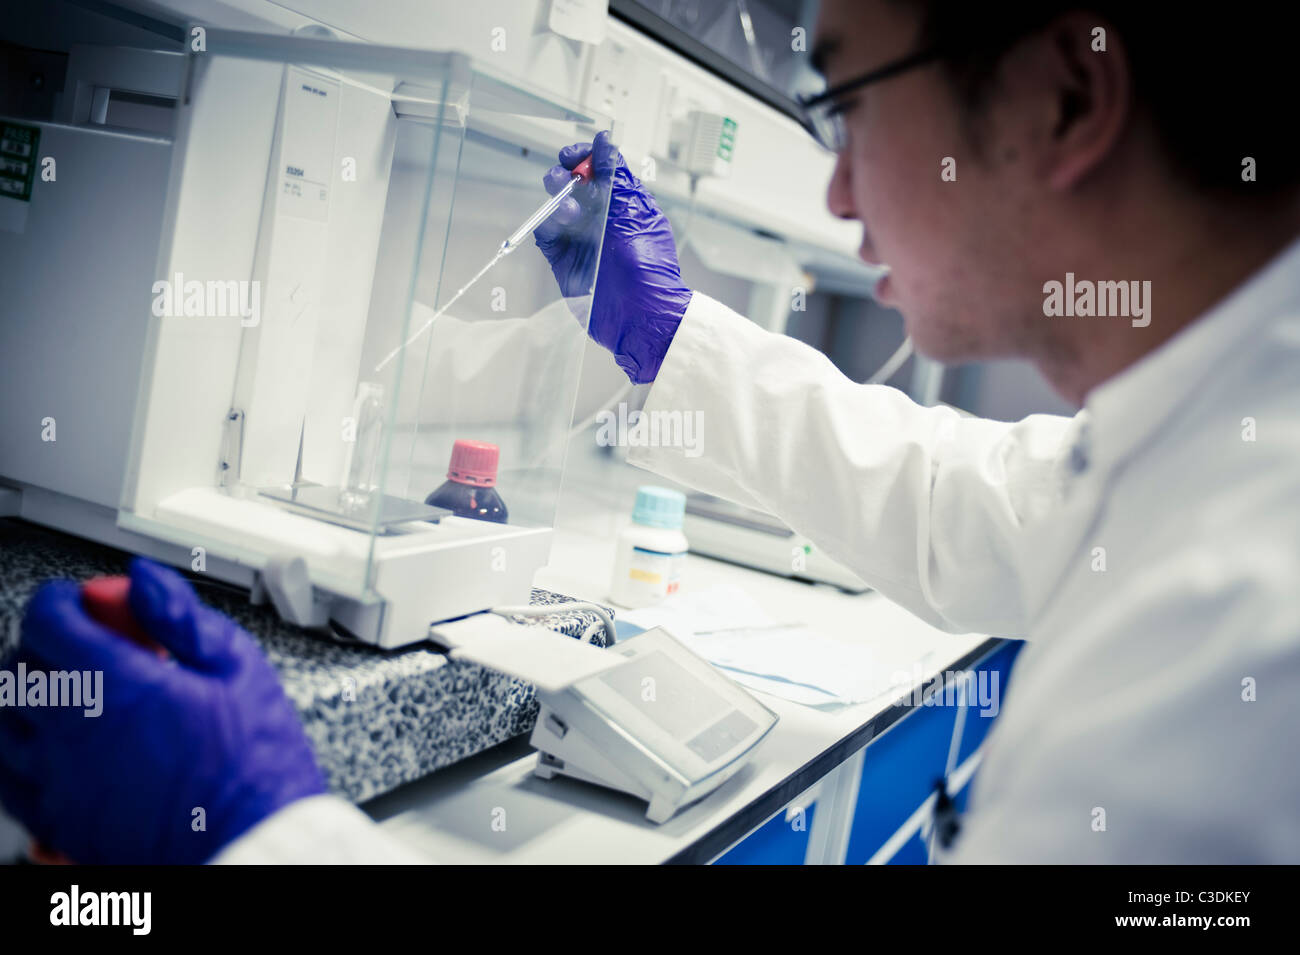 Asian male scientist en sarrau blanc et violet gants avec pipette in lab à des échelles Banque D'Images